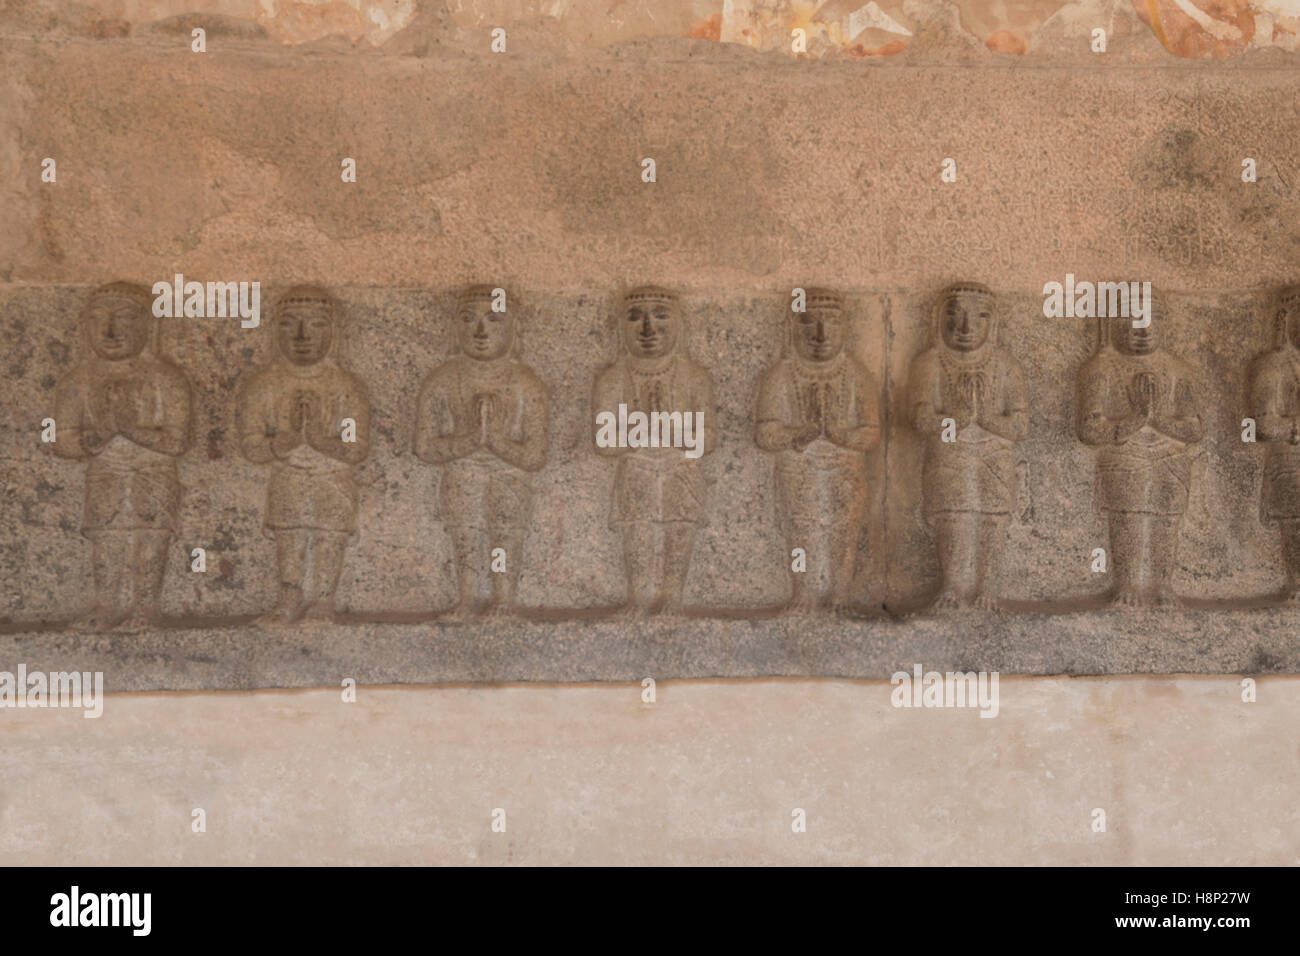 Saints shivaïtes sur le mur nord du cloître, du complexe du temple d'Airavatesvara, Darasuram, Tamil Nadu, Inde. Banque D'Images